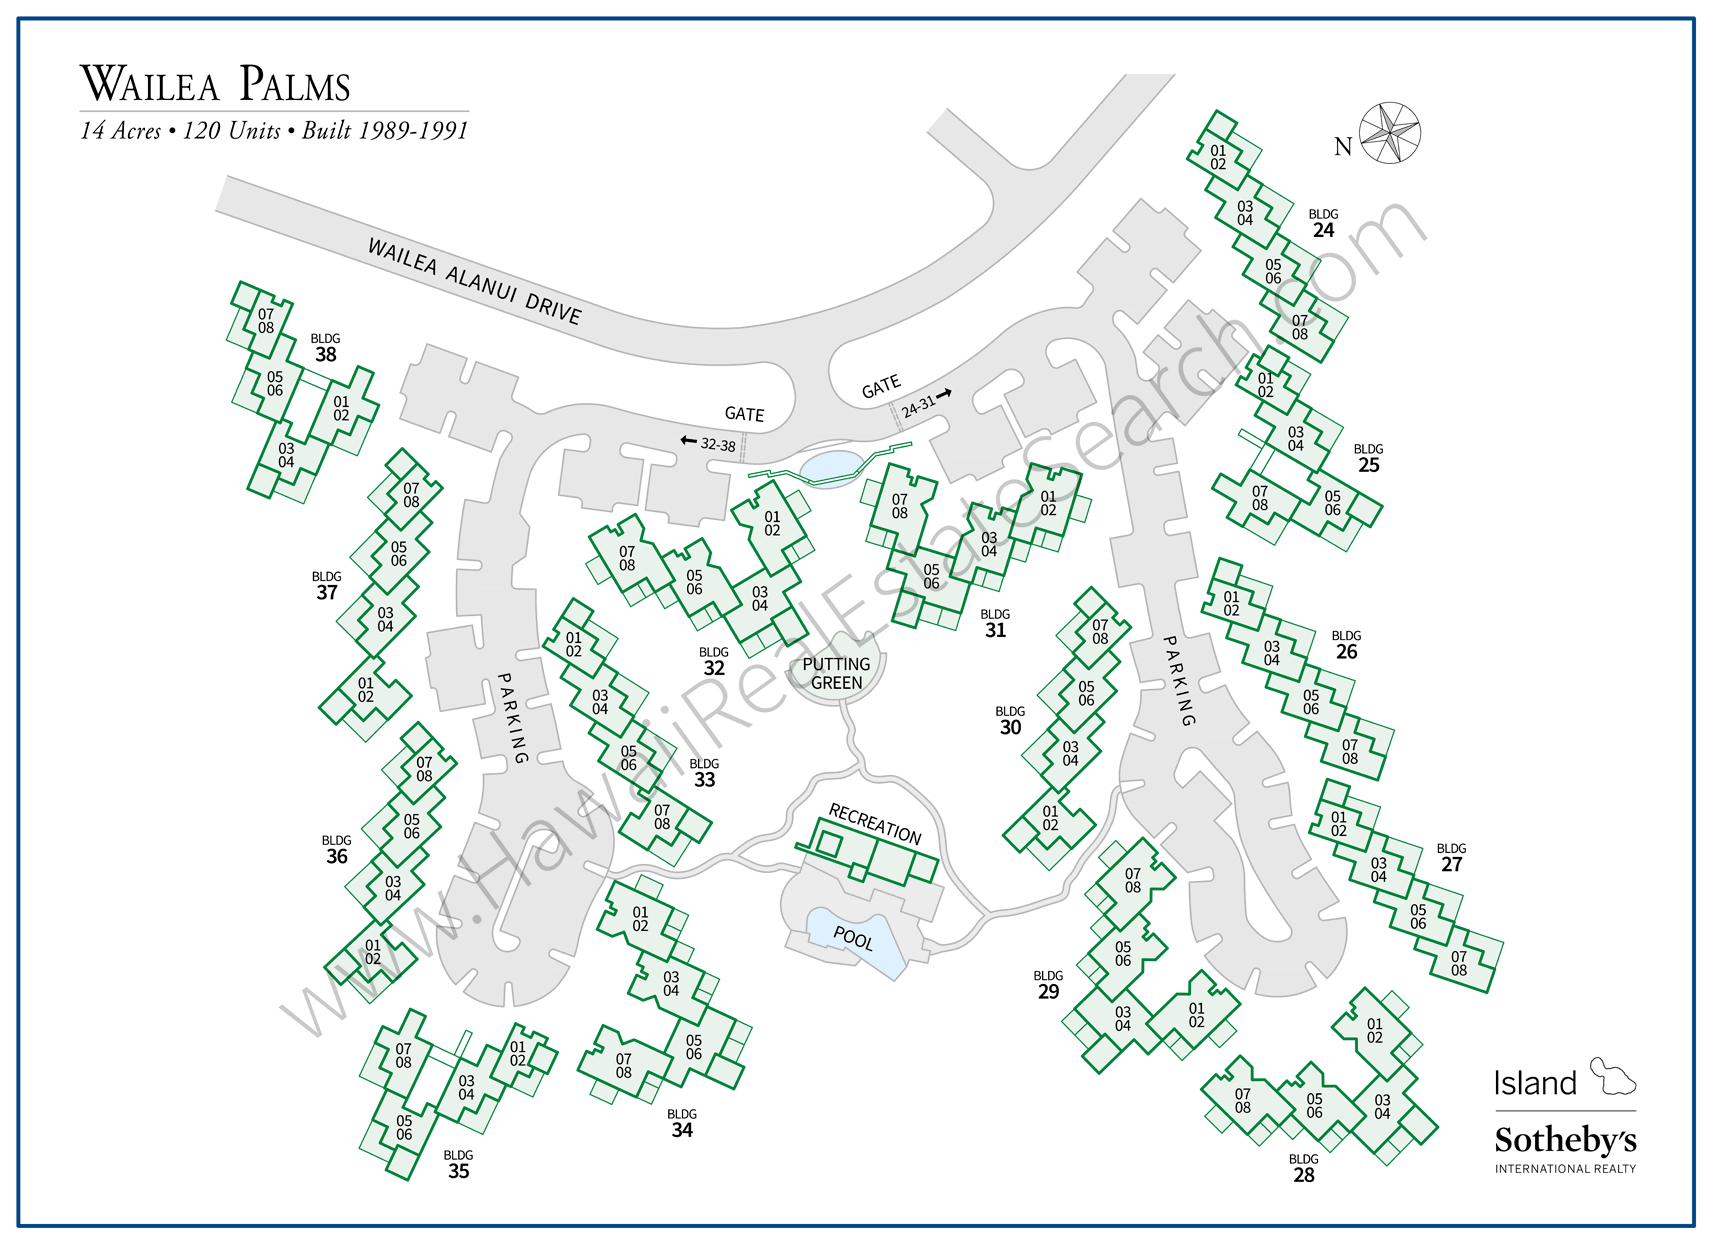 Wailea Palms Property Map Updated 2018